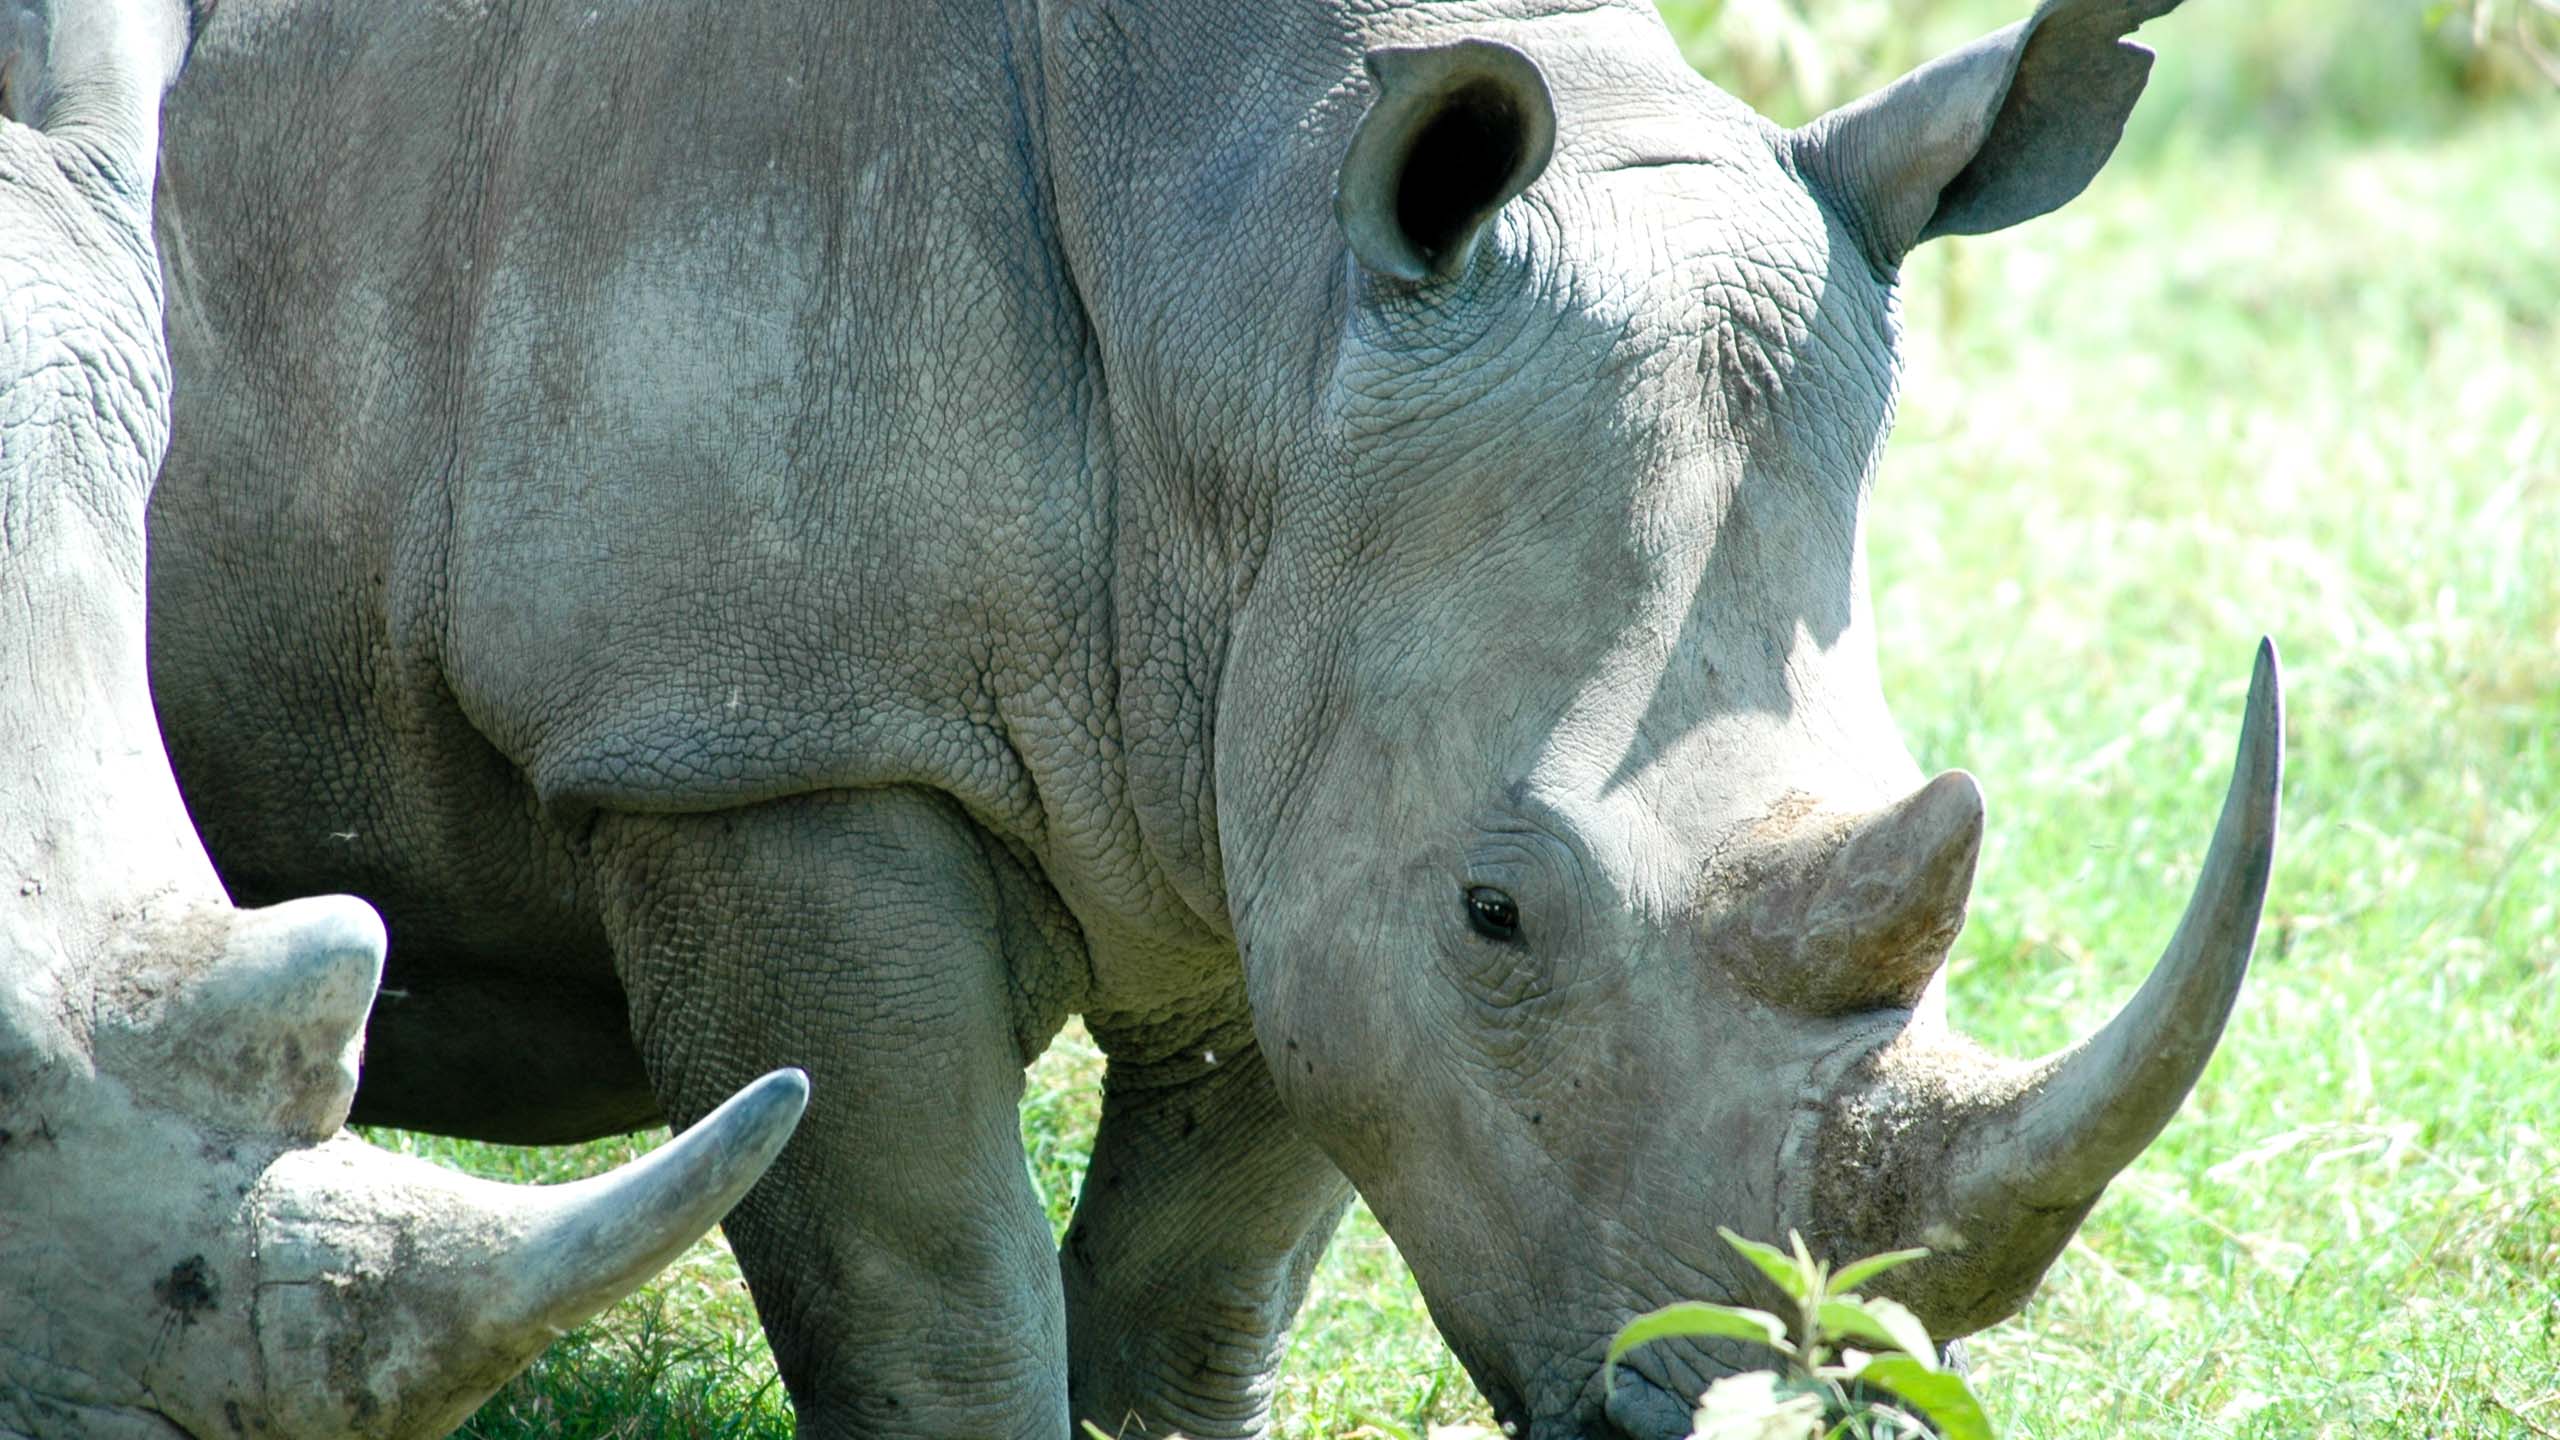 Rhino in Kenya